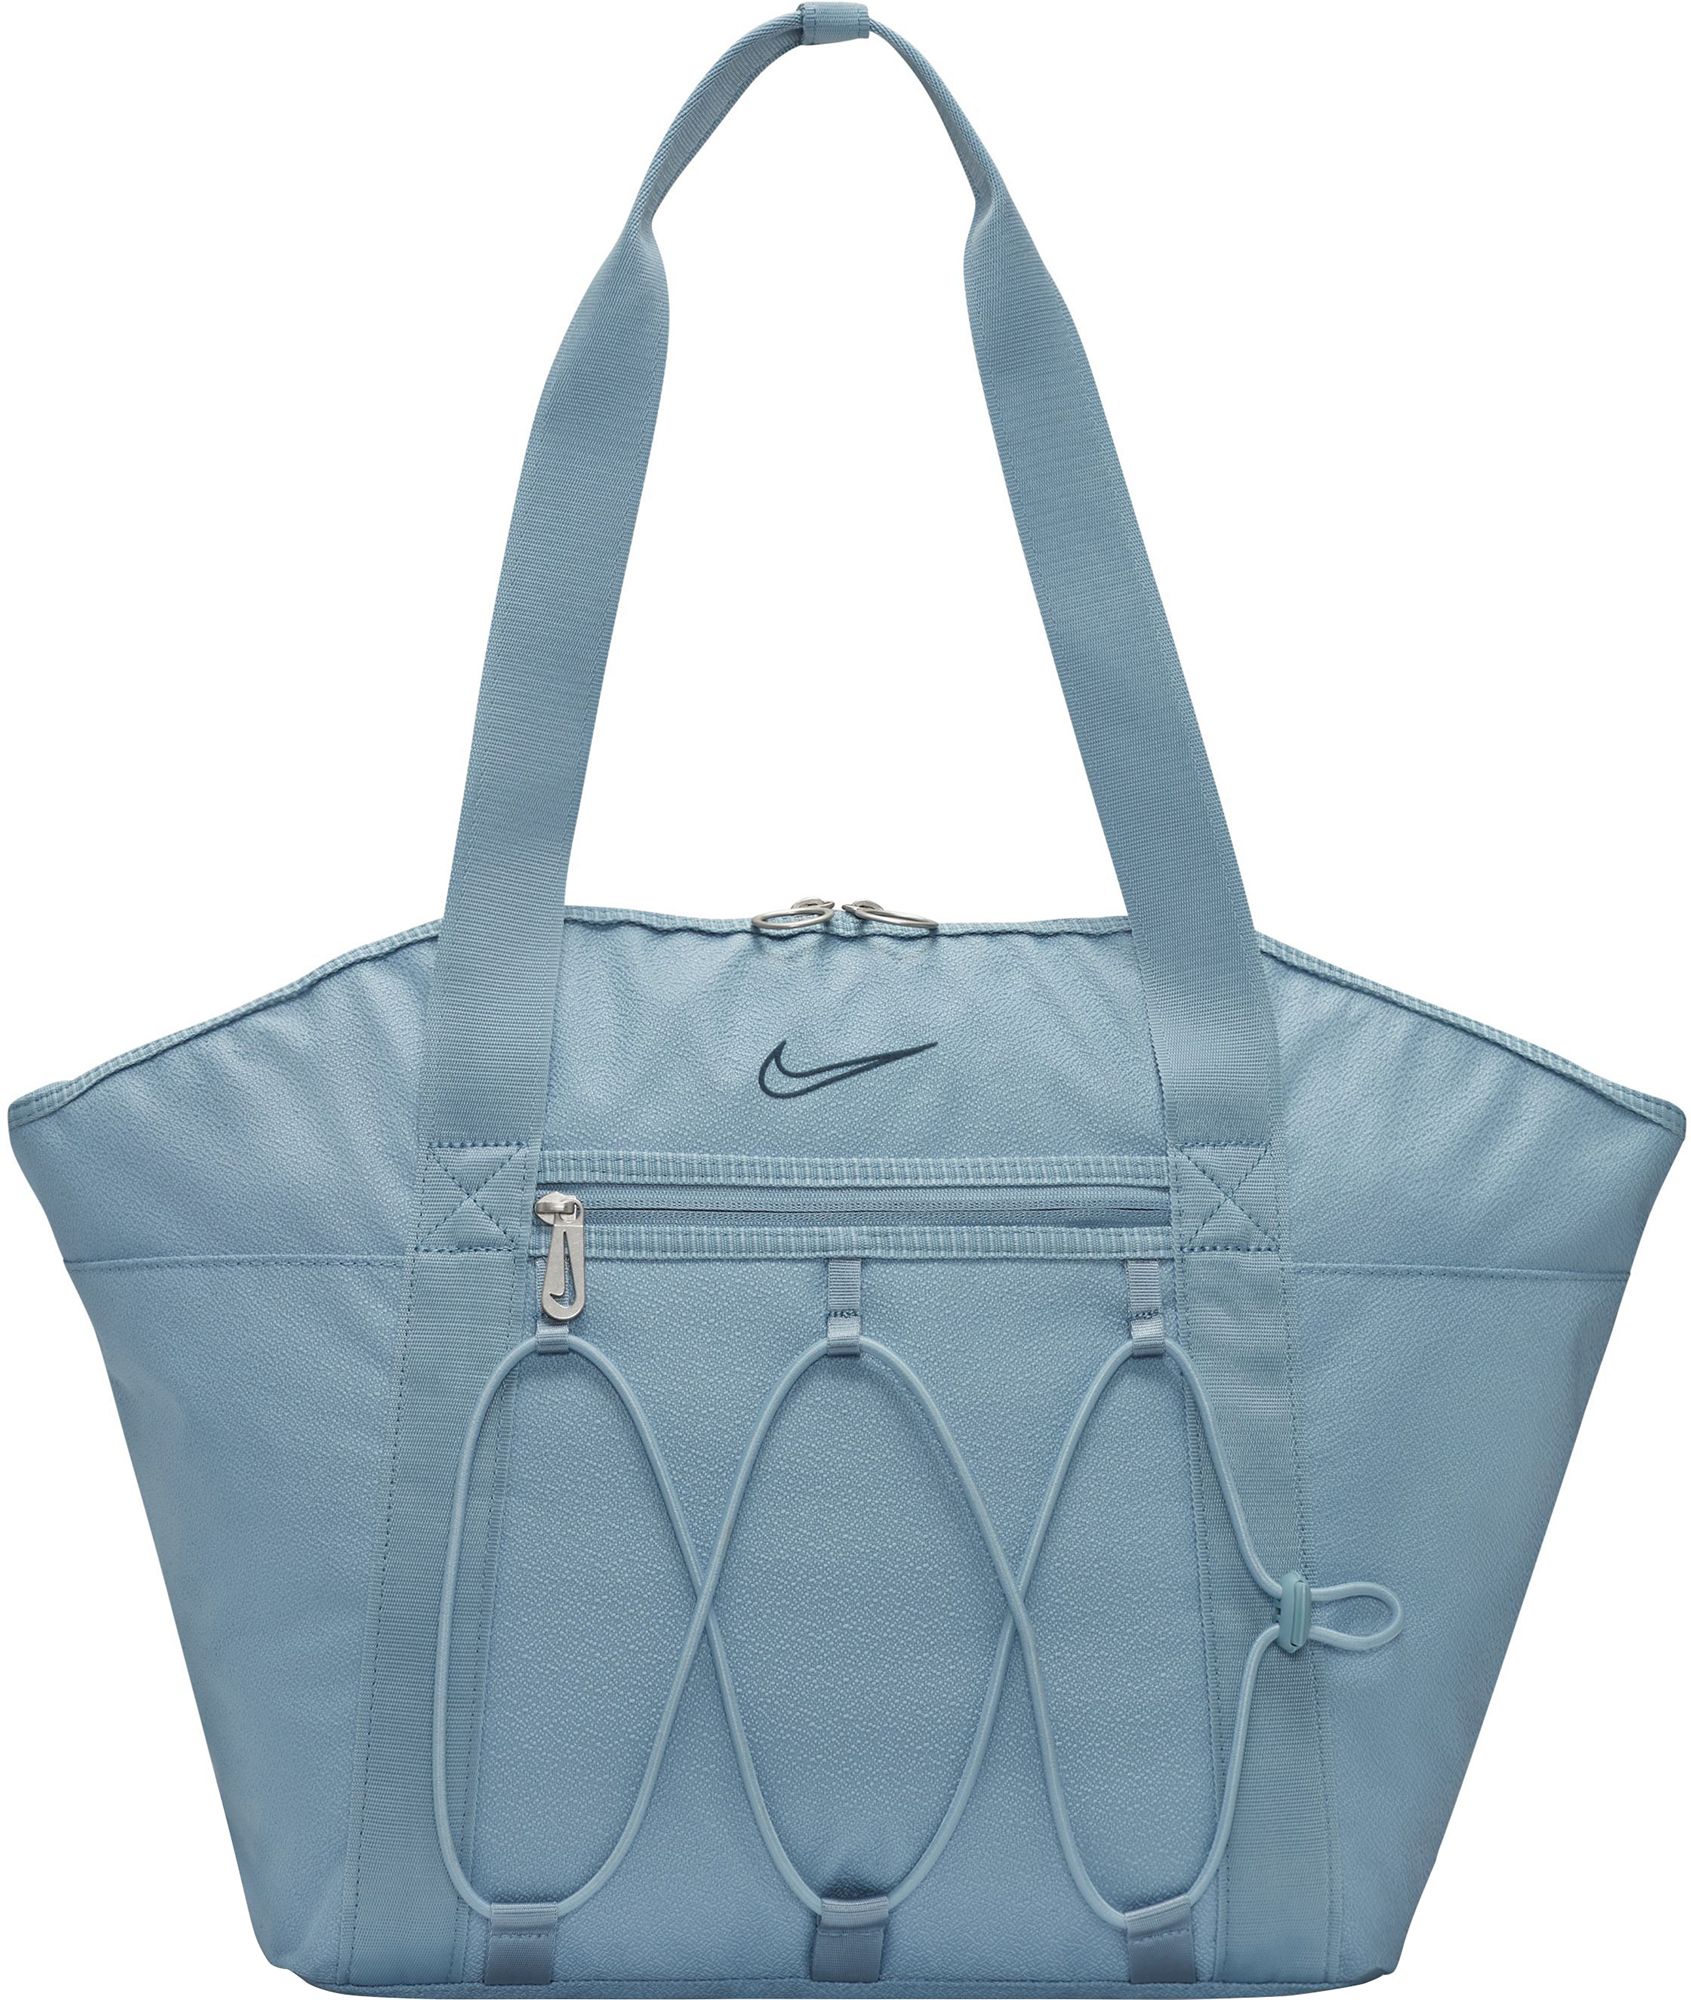 Nike / One Tote Bag